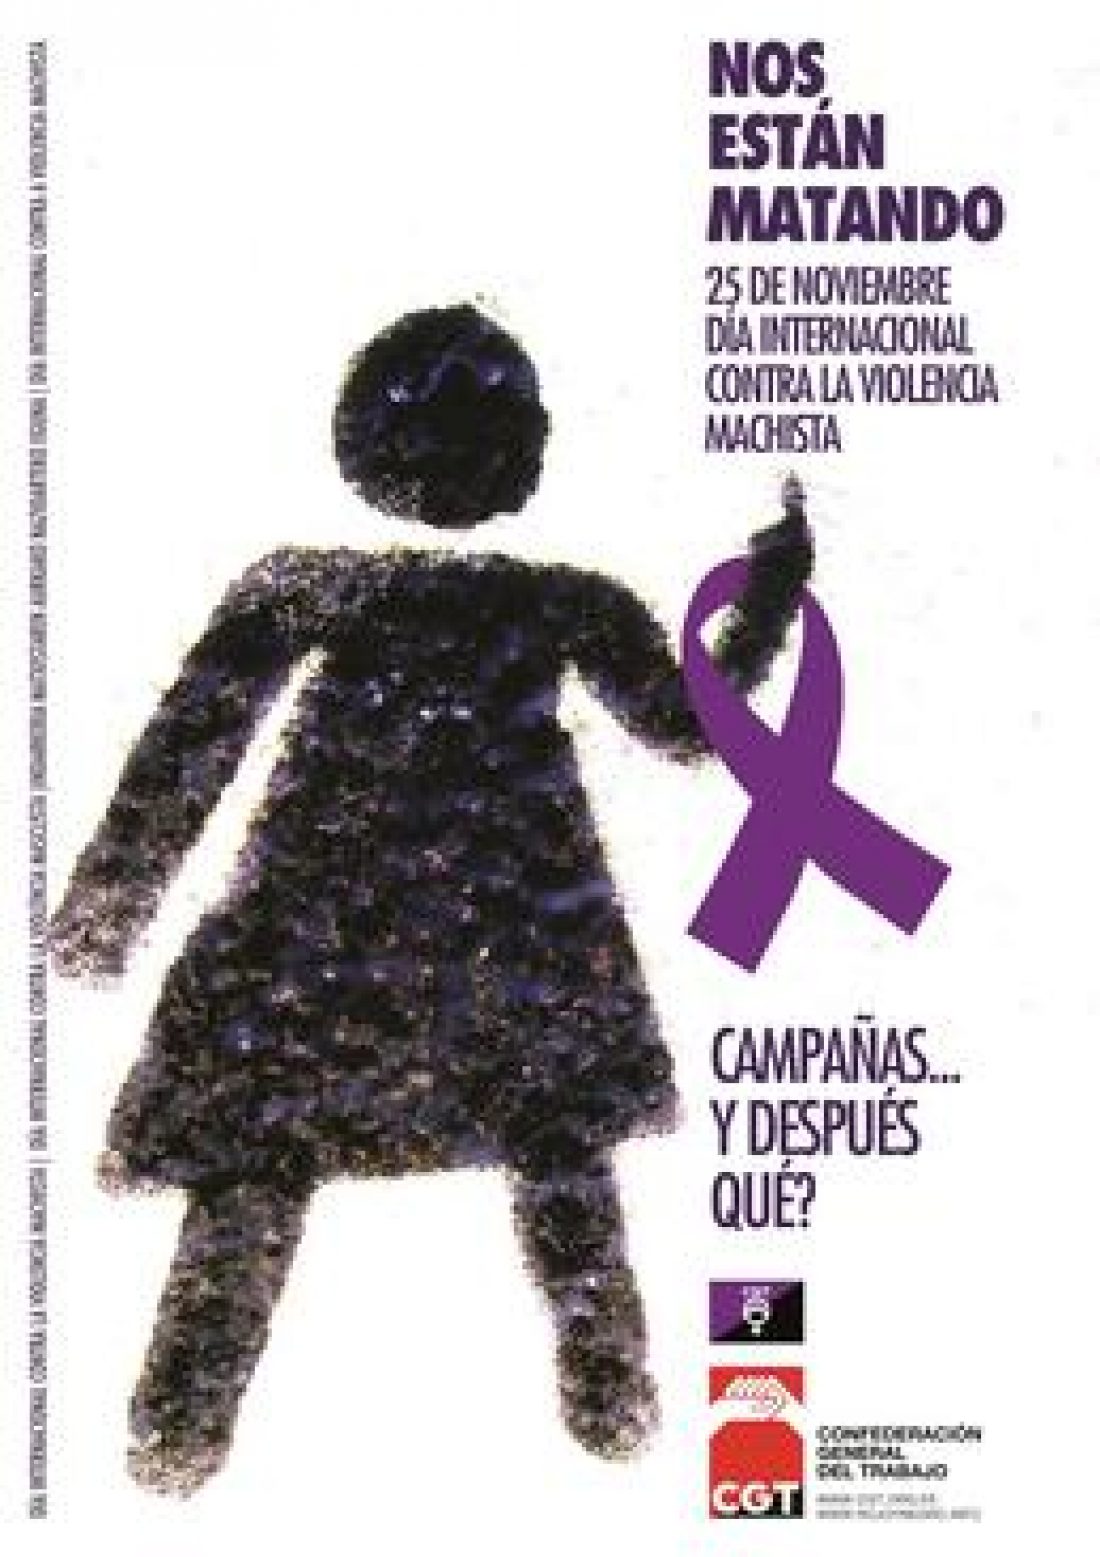 25-N: Día Internacional contra la violencia machista. Actos y convocatorias